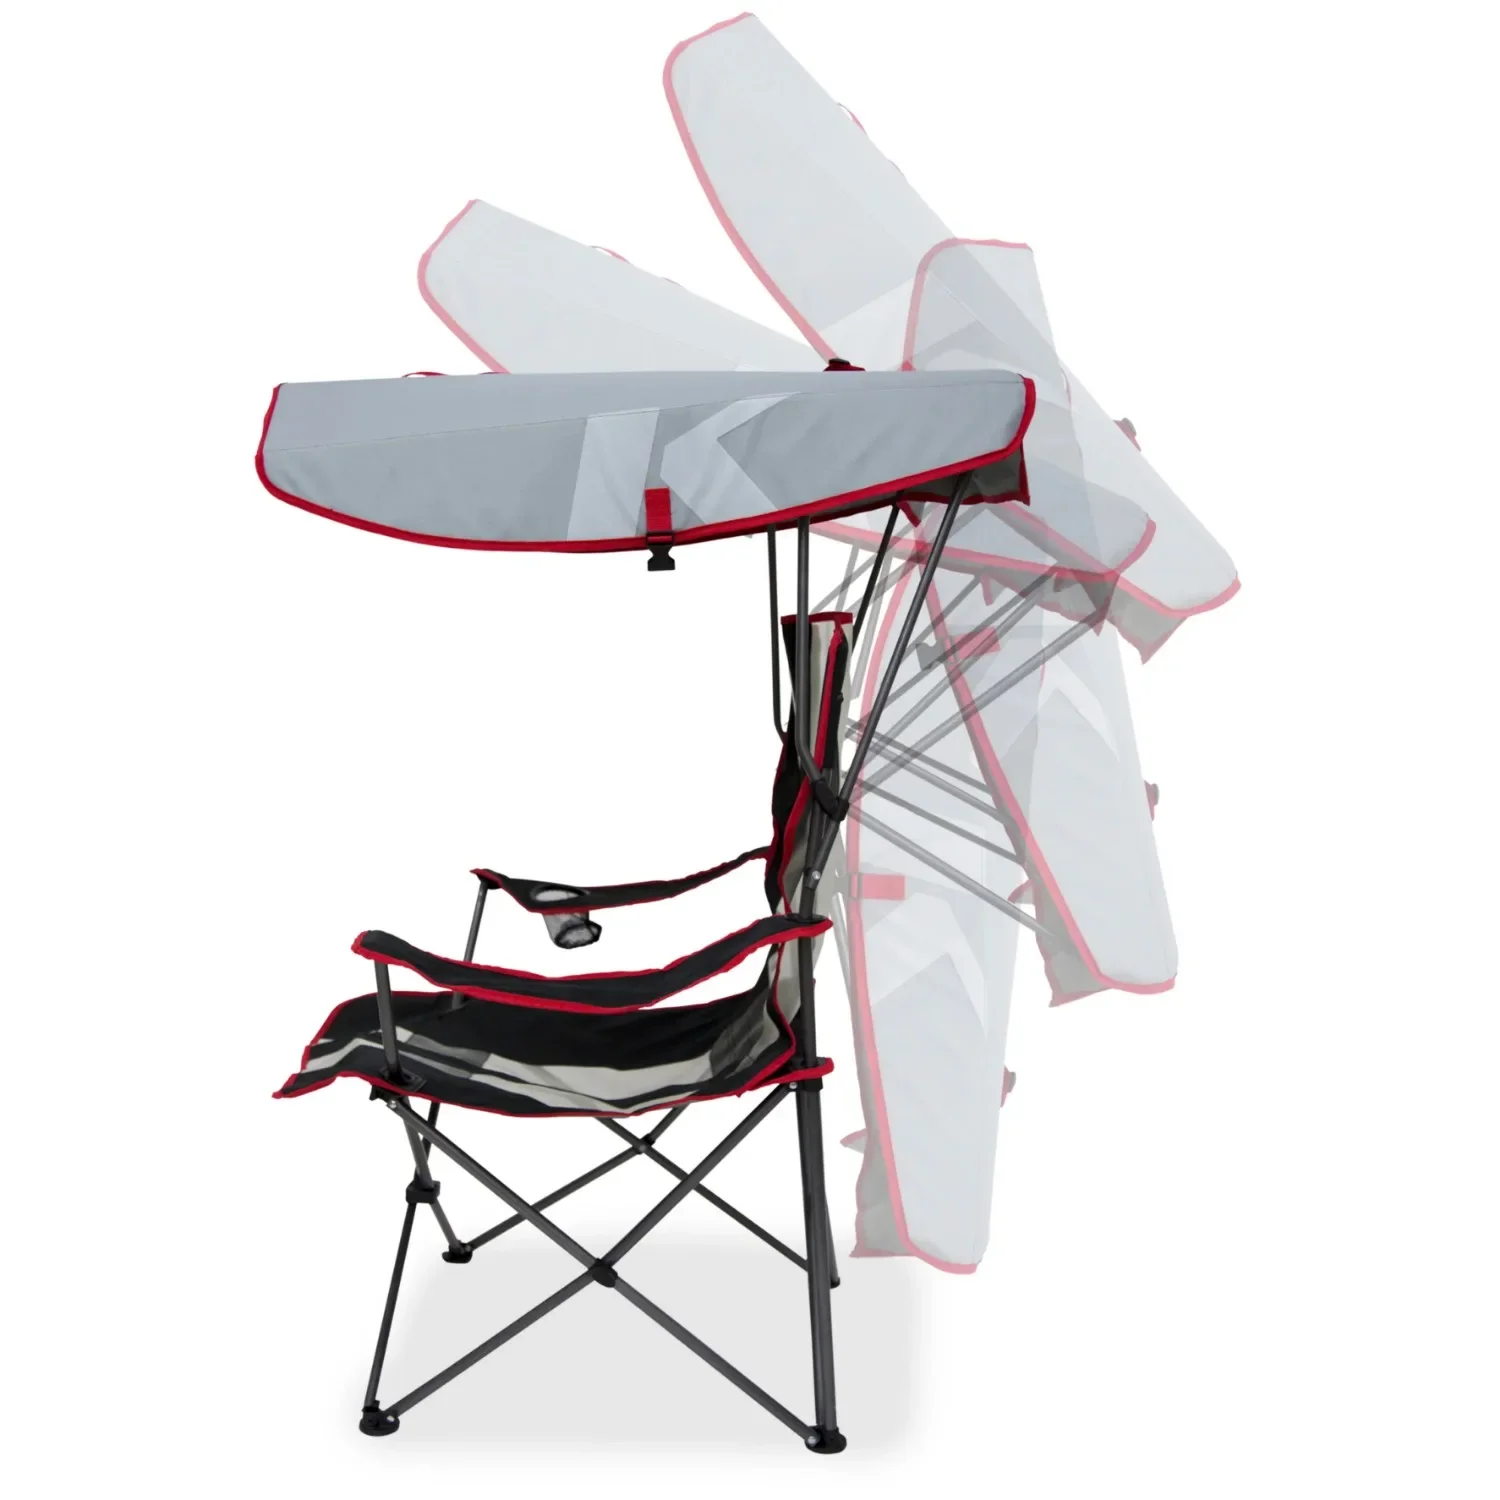 Kelsyus Original Canopy Chair - Складной стул Для кемпинга, Выхода из багажника и Проведения мероприятий на открытом воздухе - Черный | США | НОВЫЙ